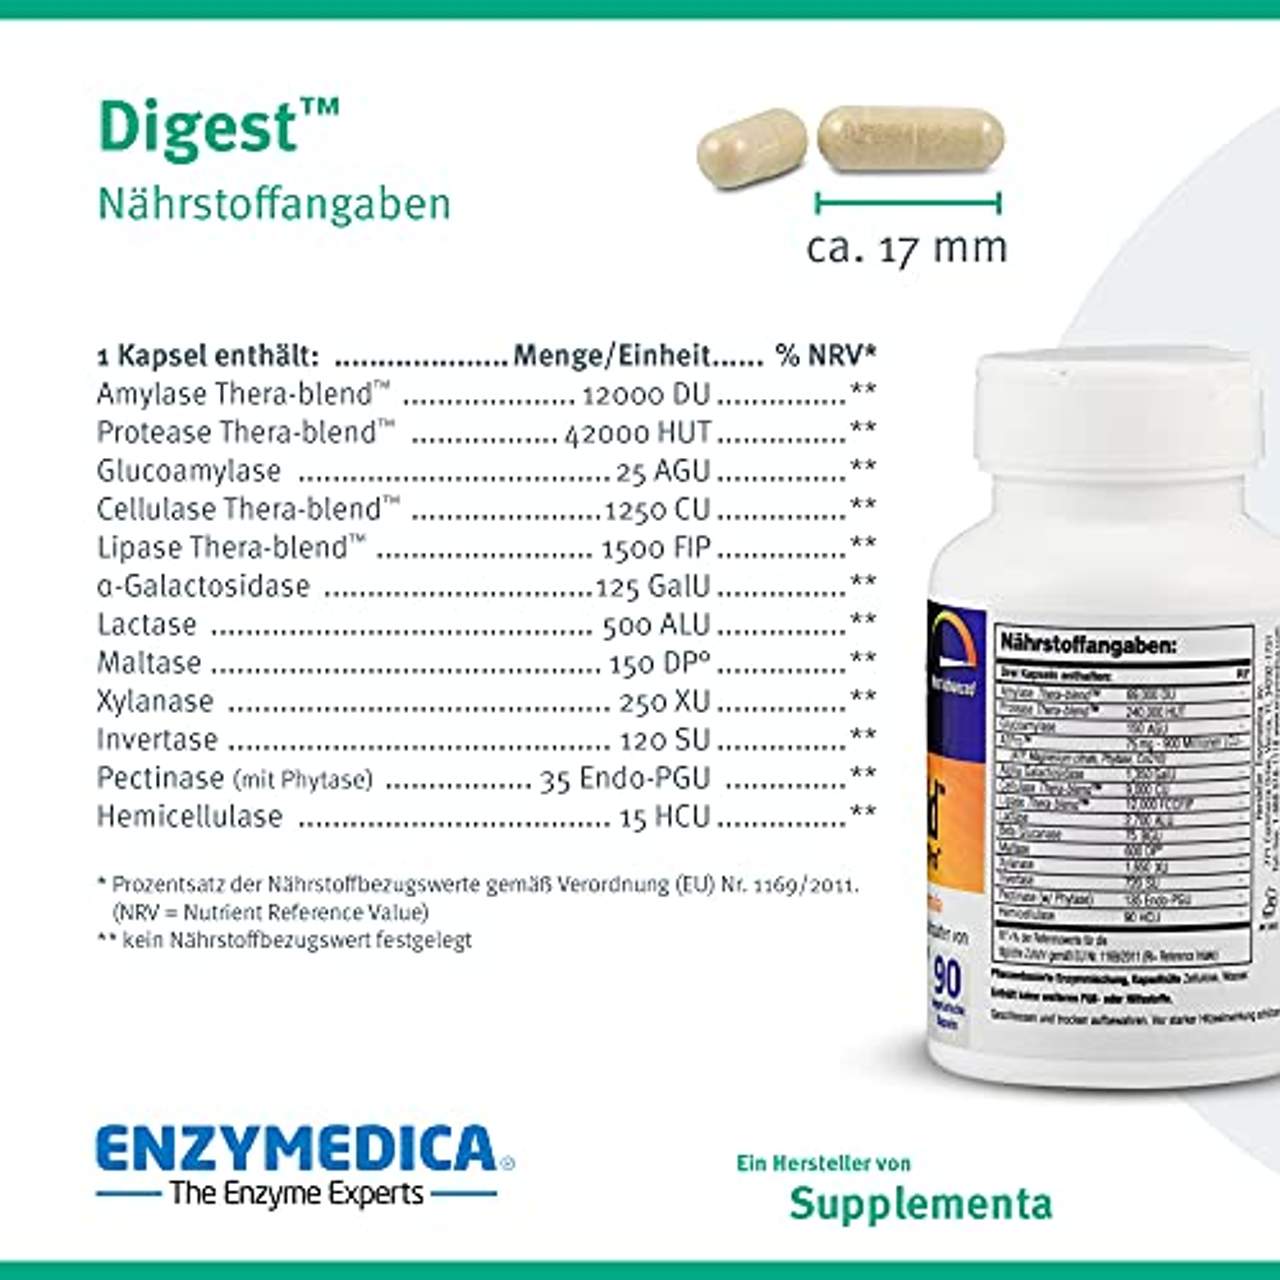 Enzymedica Digest Laborgeprüfte Kombination von Enzymen